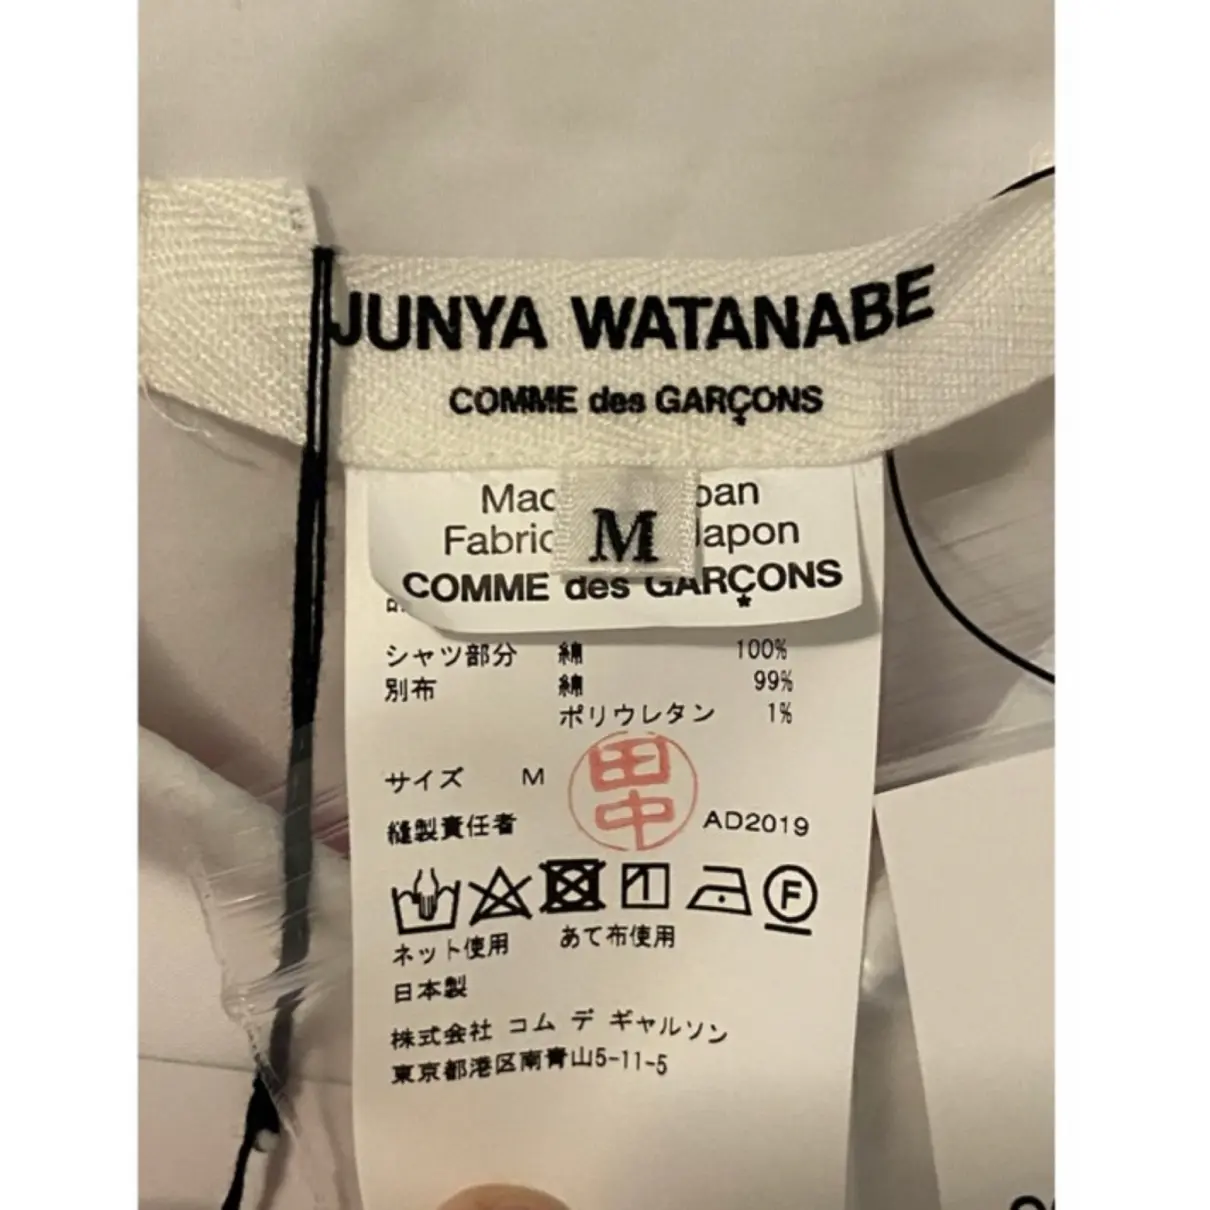 Buy Junya Watanabe Shirt online